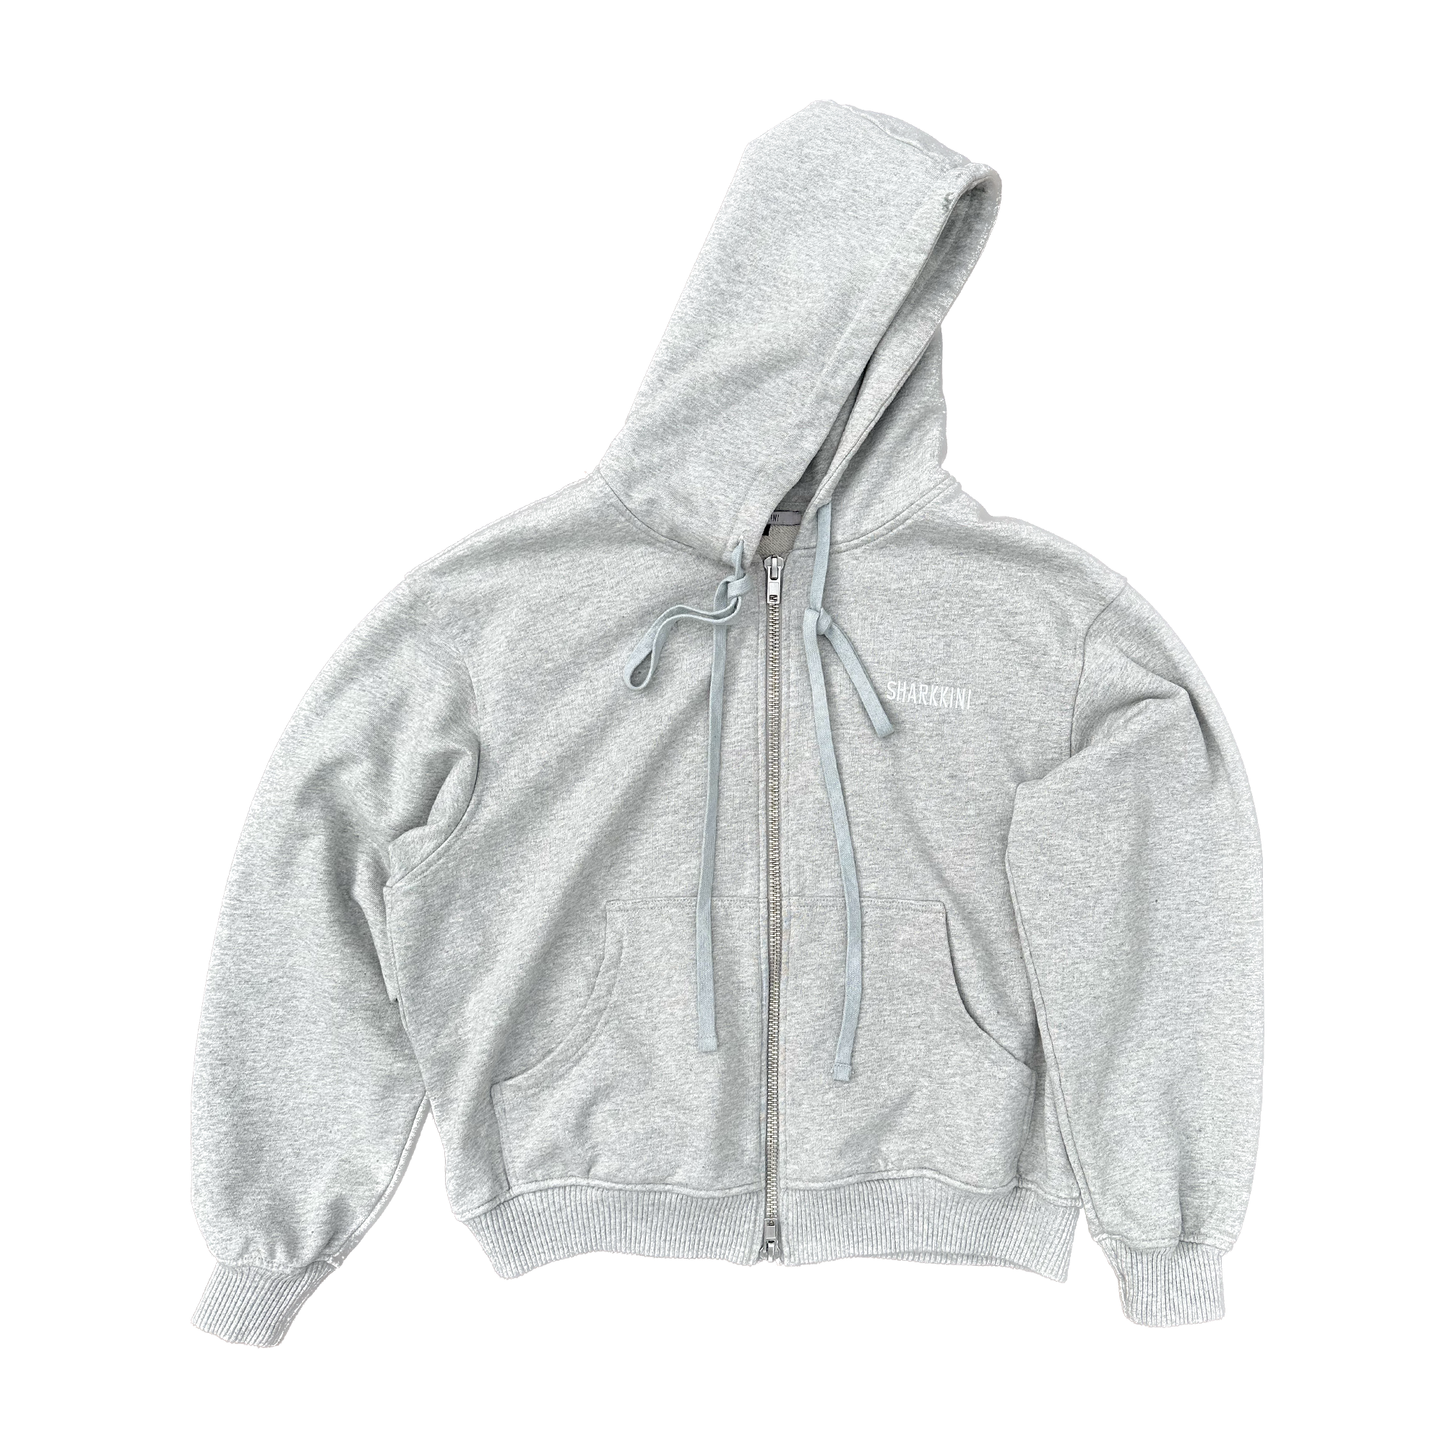 Fly hoodie - Grey